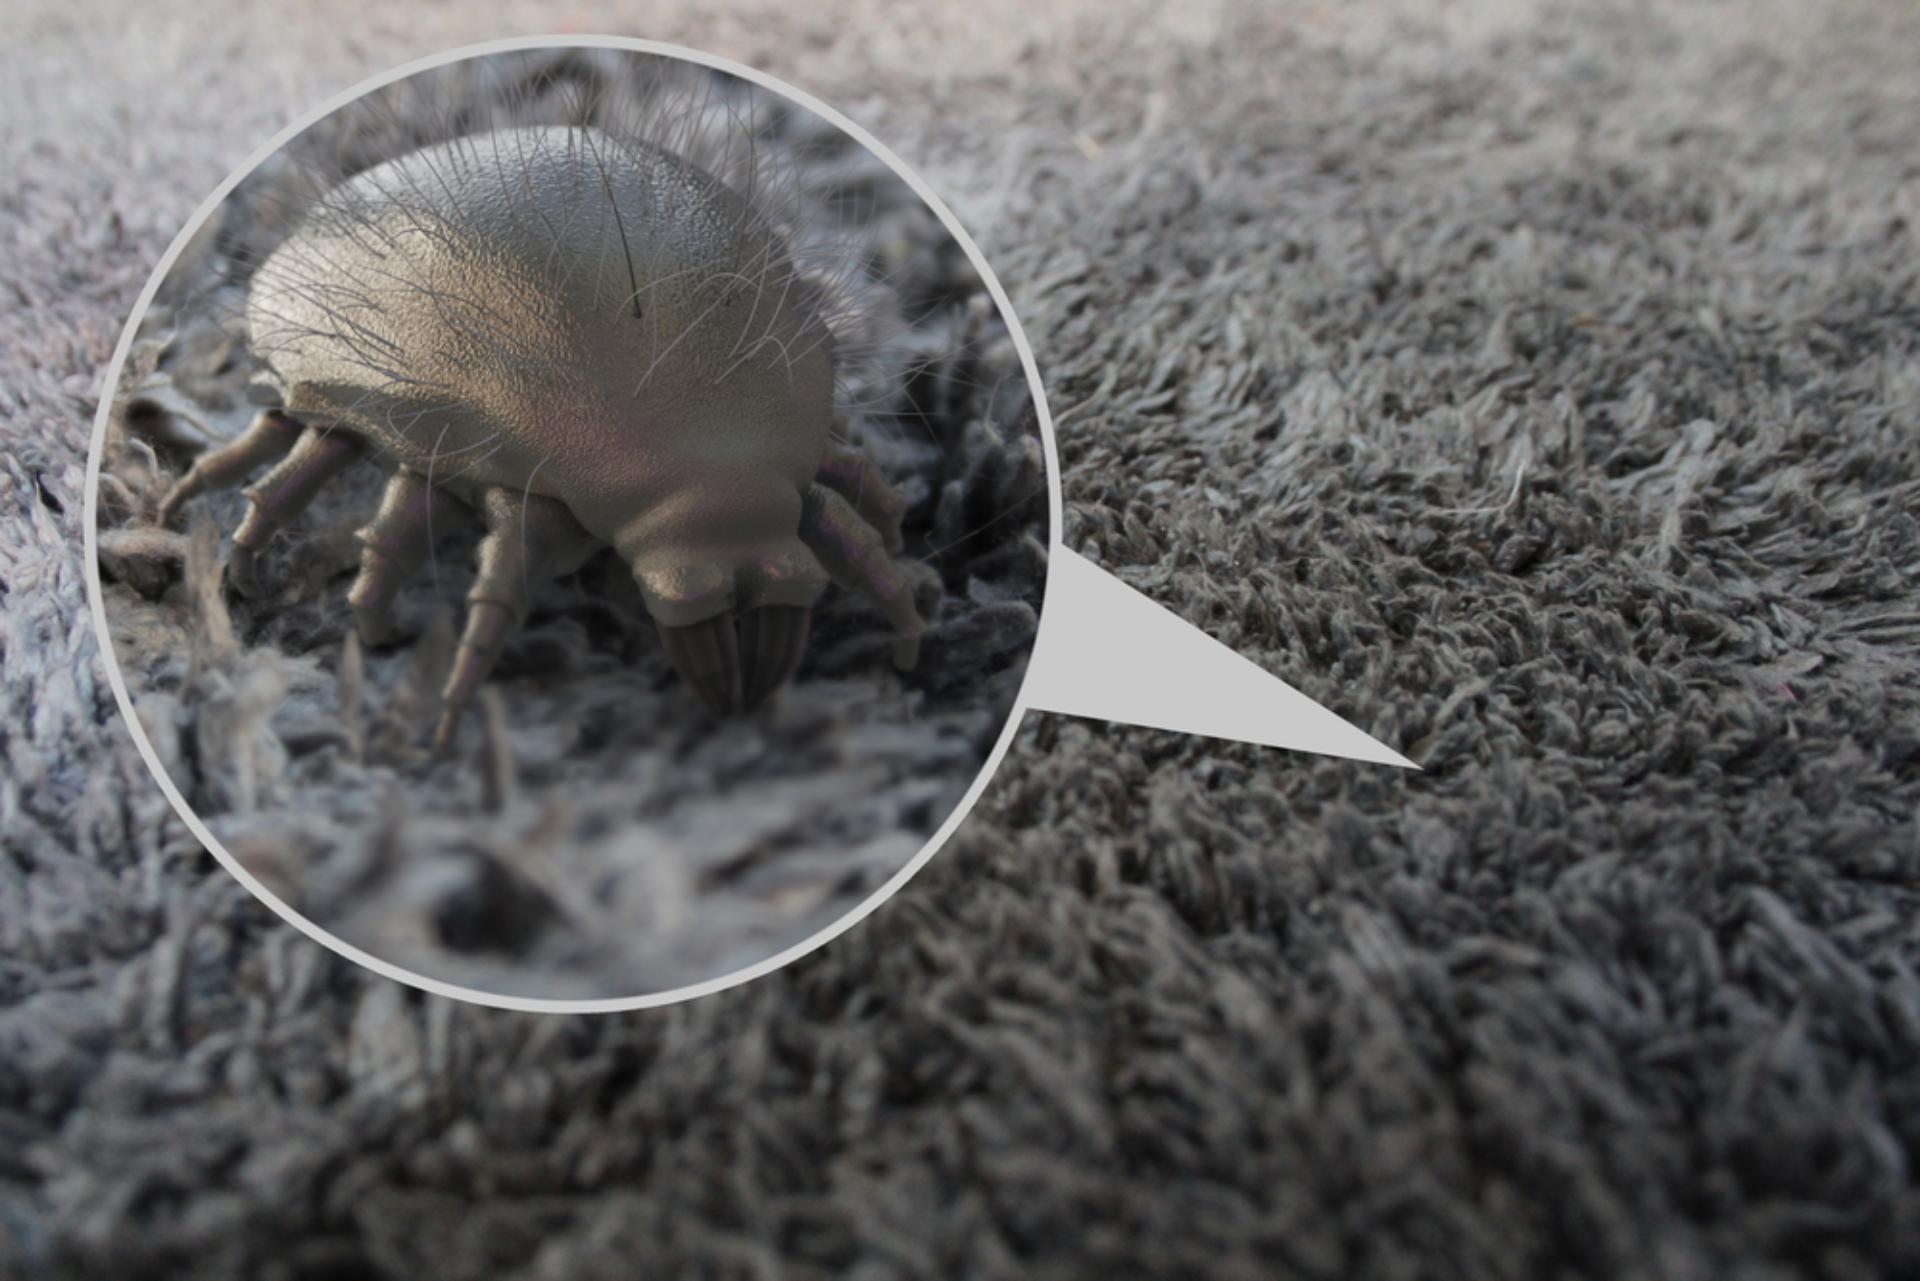 Dust mite shown in carpet